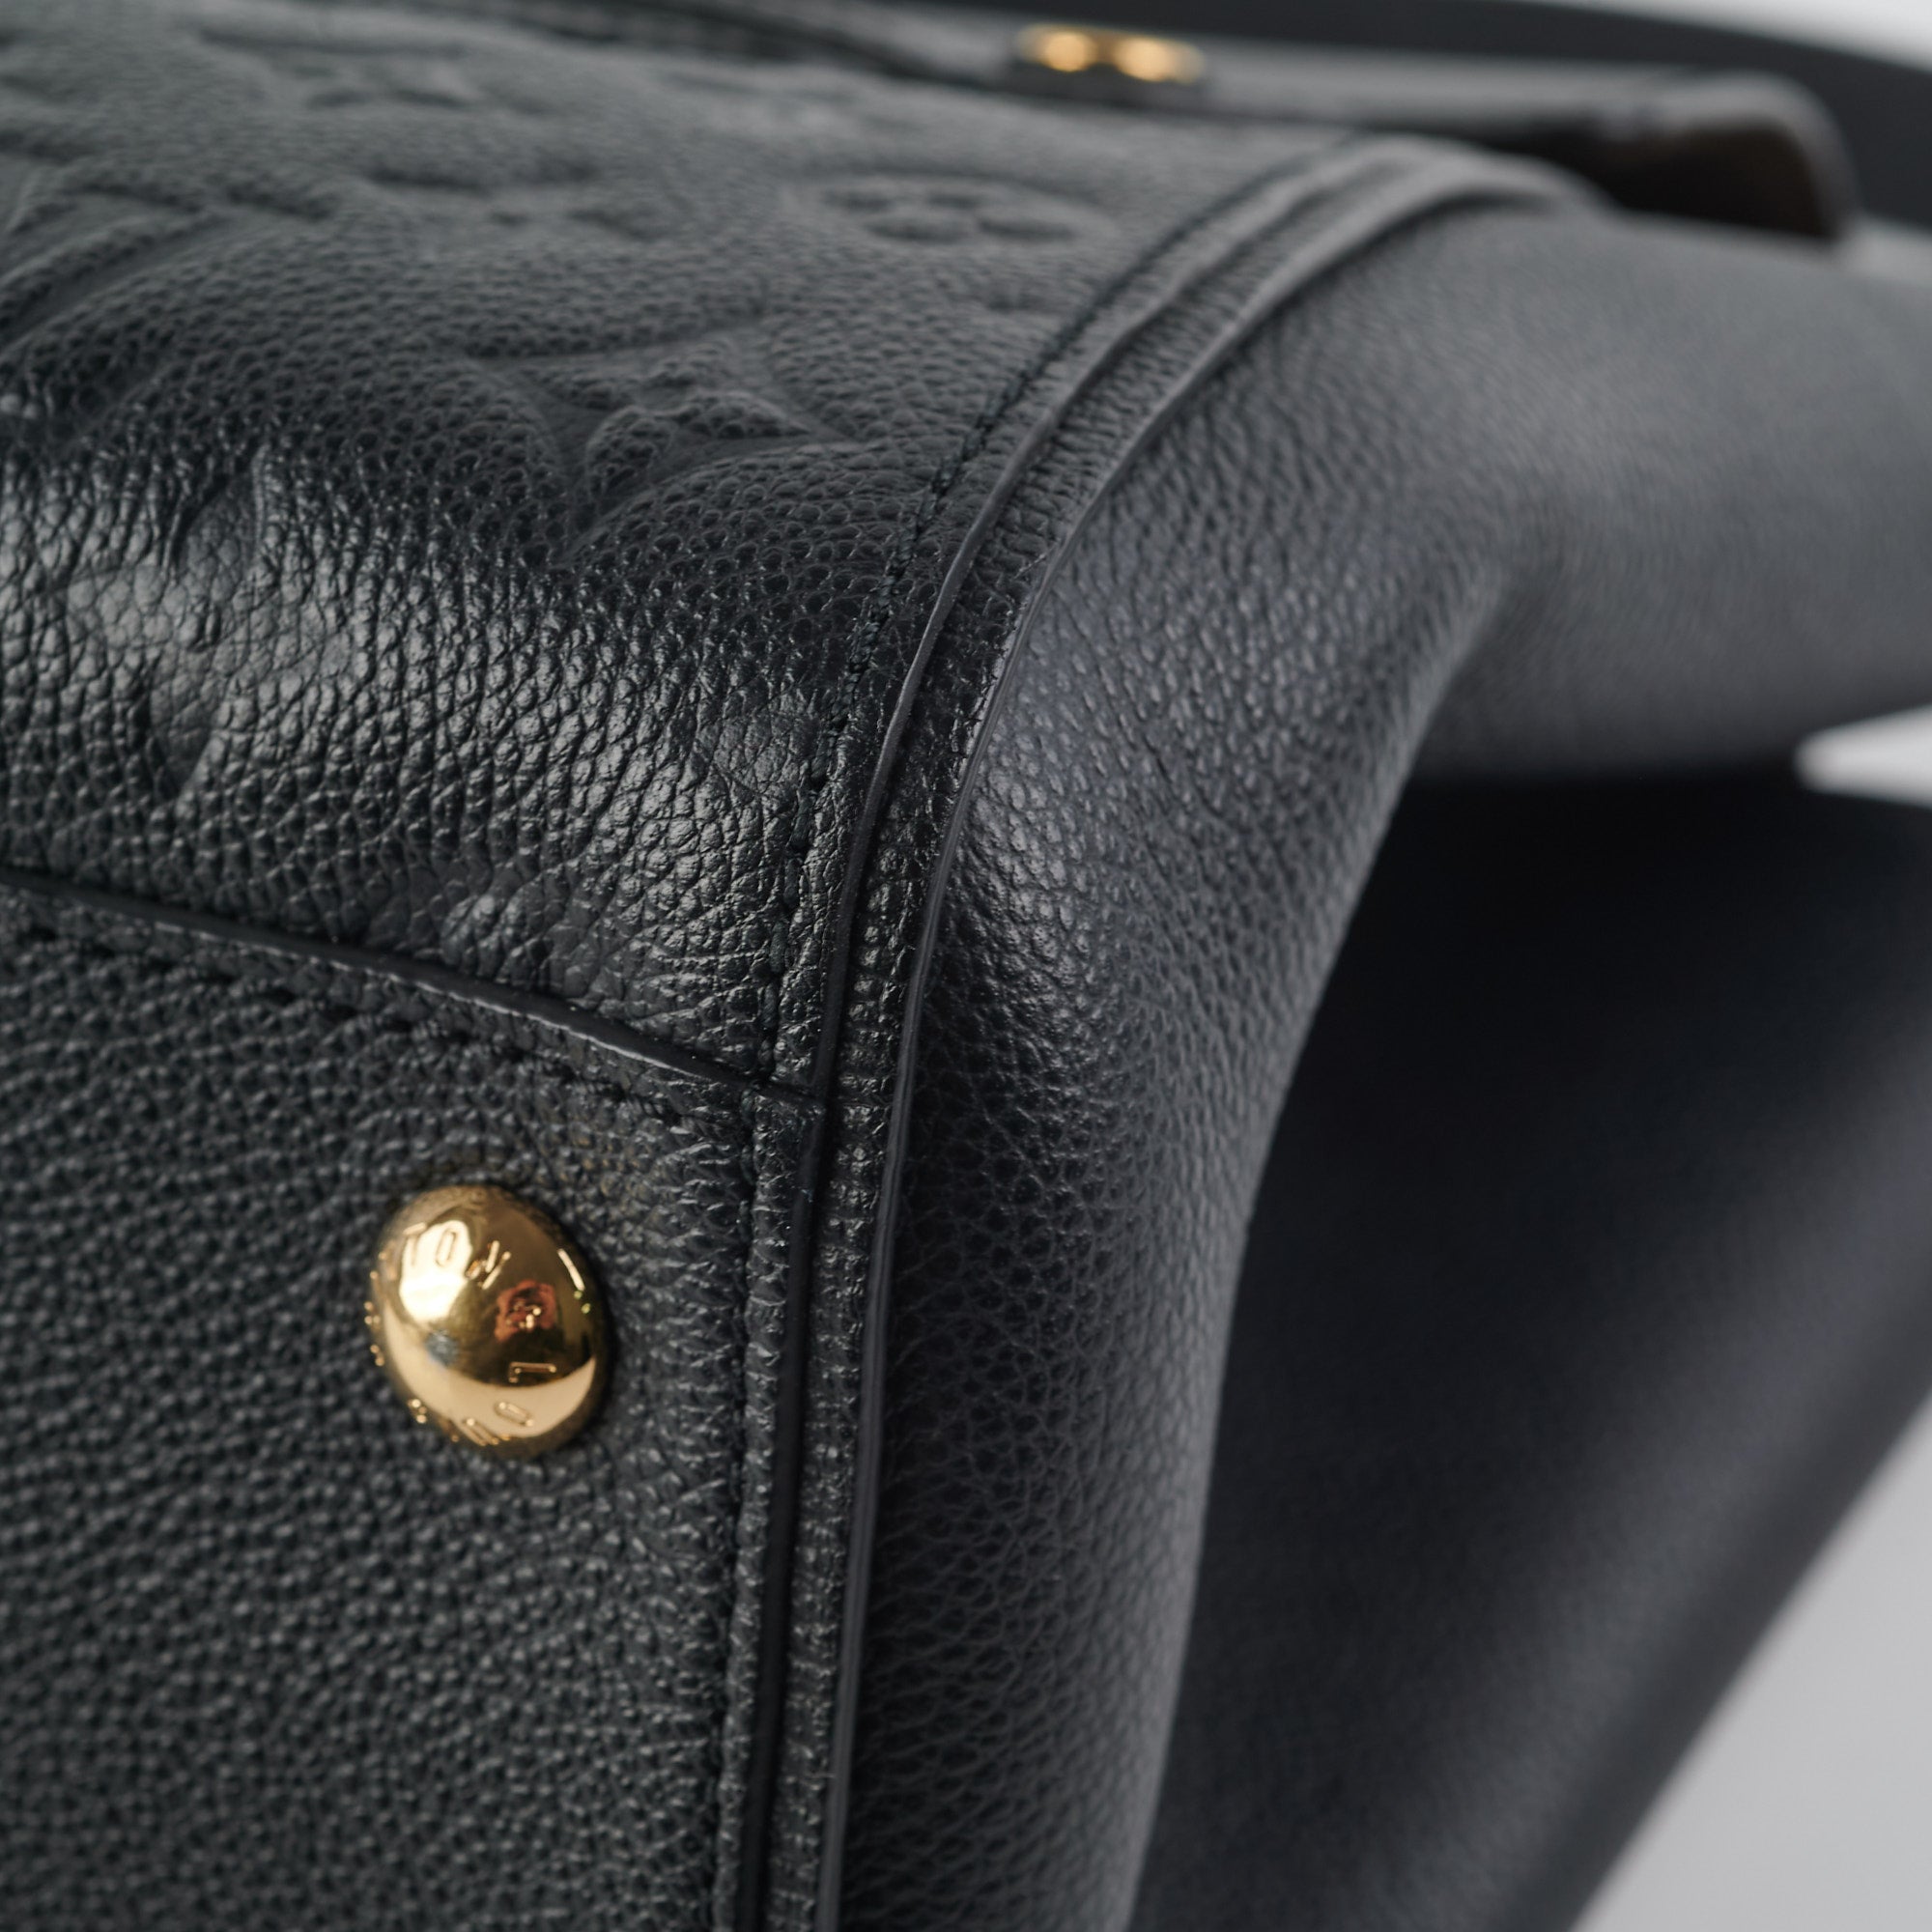 Trocadero Handbag Monogram Empreinte Leather